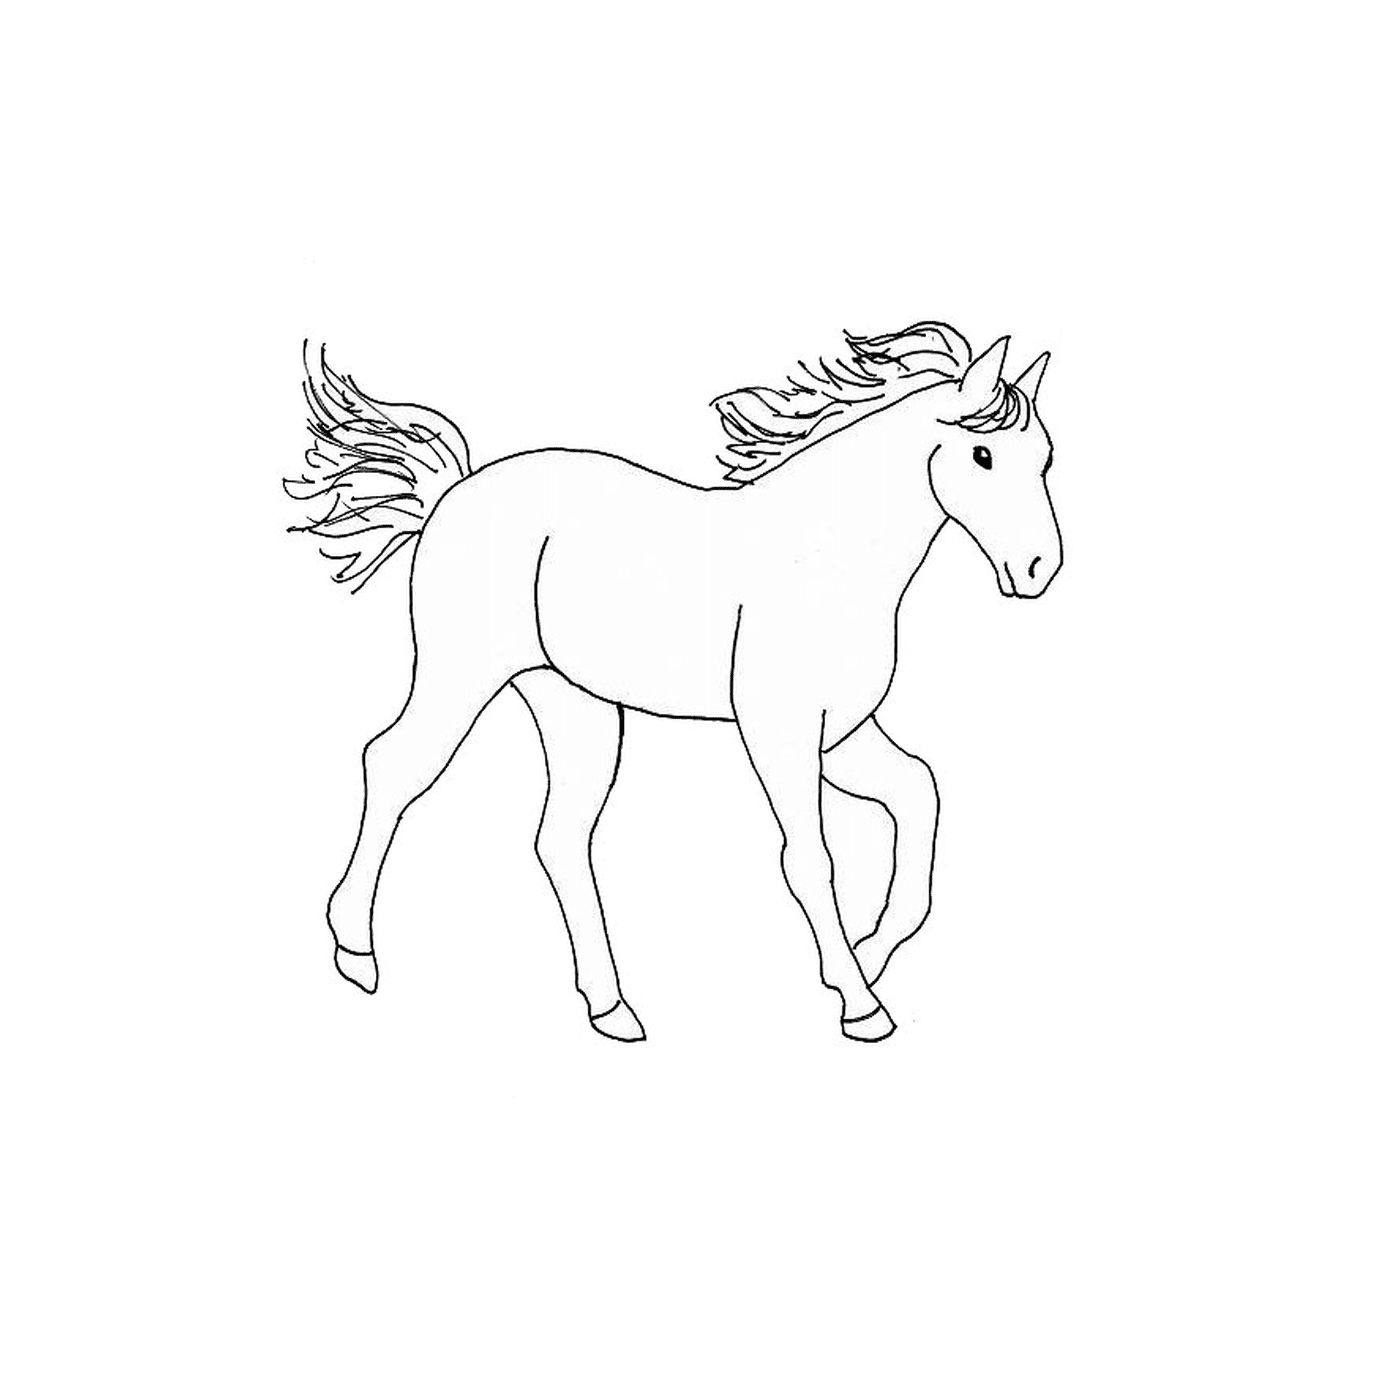  Cavallo - Un cavallo 